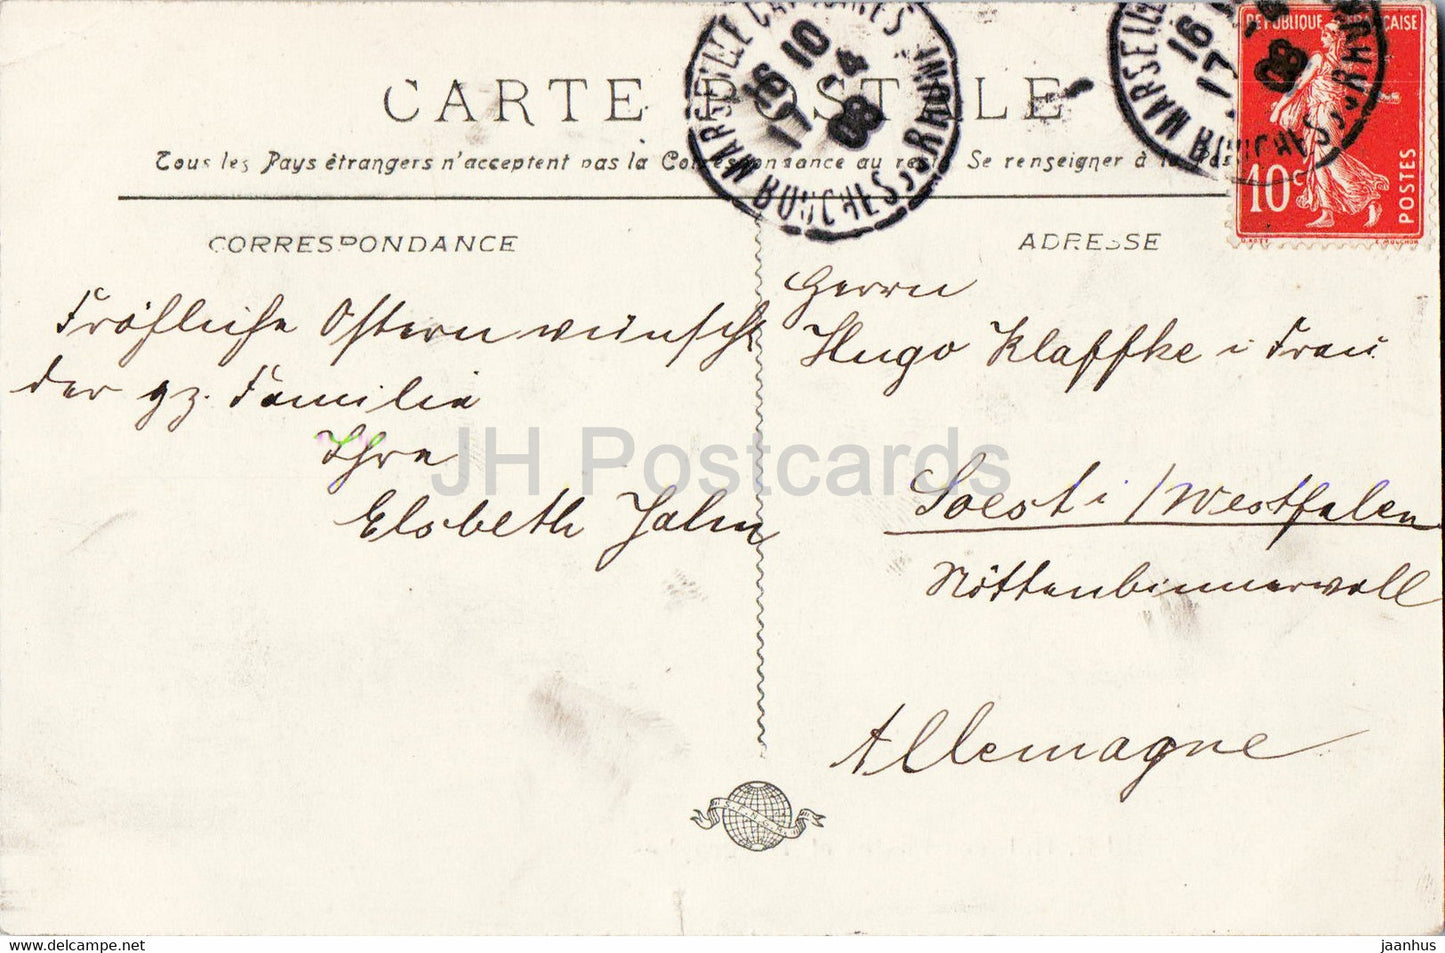 Marseille - Hot des Postes et Télégraphes - bureau de poste - télégraphe - 5 - carte postale ancienne - 1908 - France - occasion